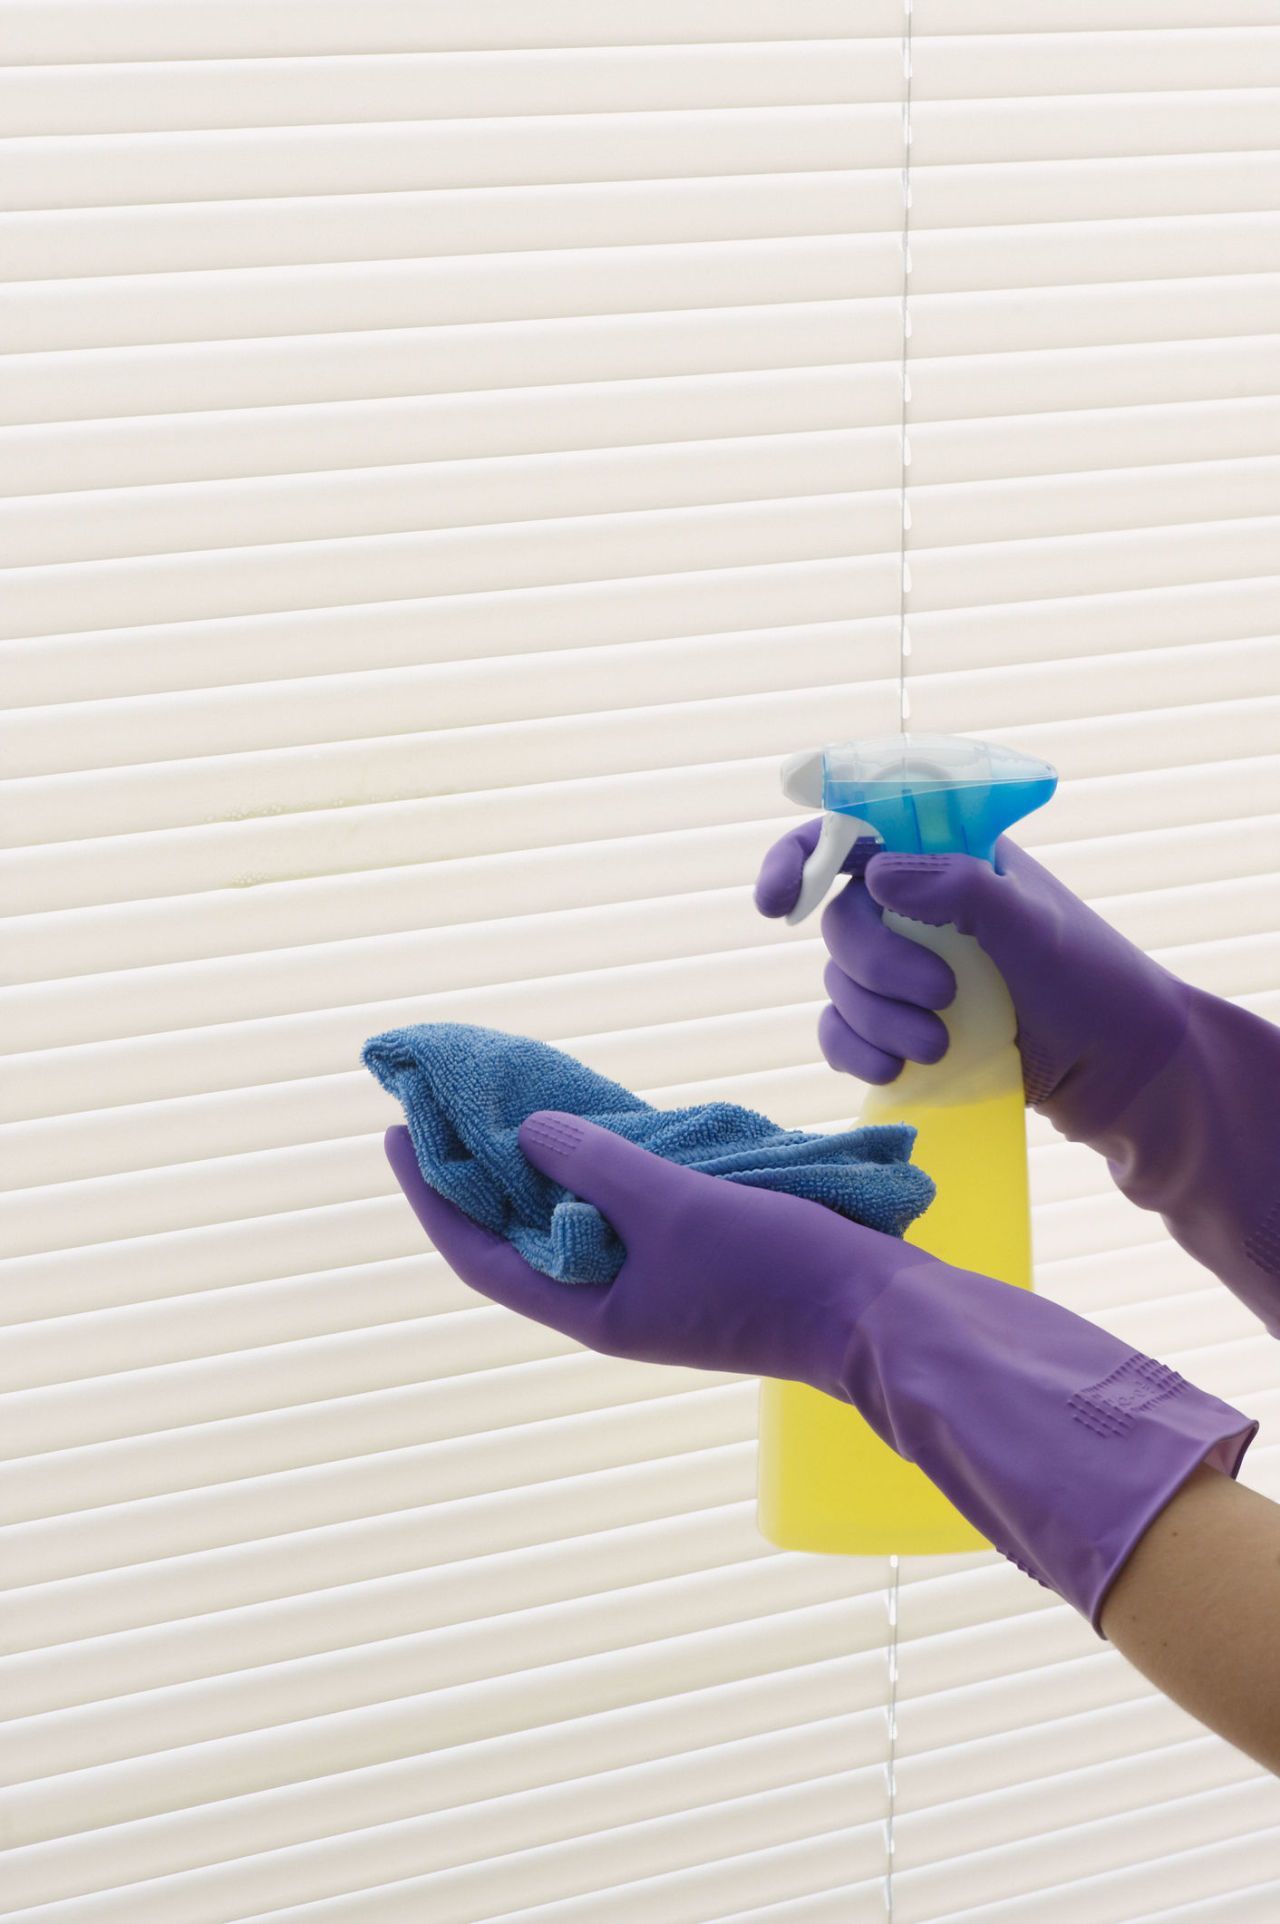 Par rok v vijoličnih gumijastih rokavicah za čiščenje senčil s pršilom in krpo